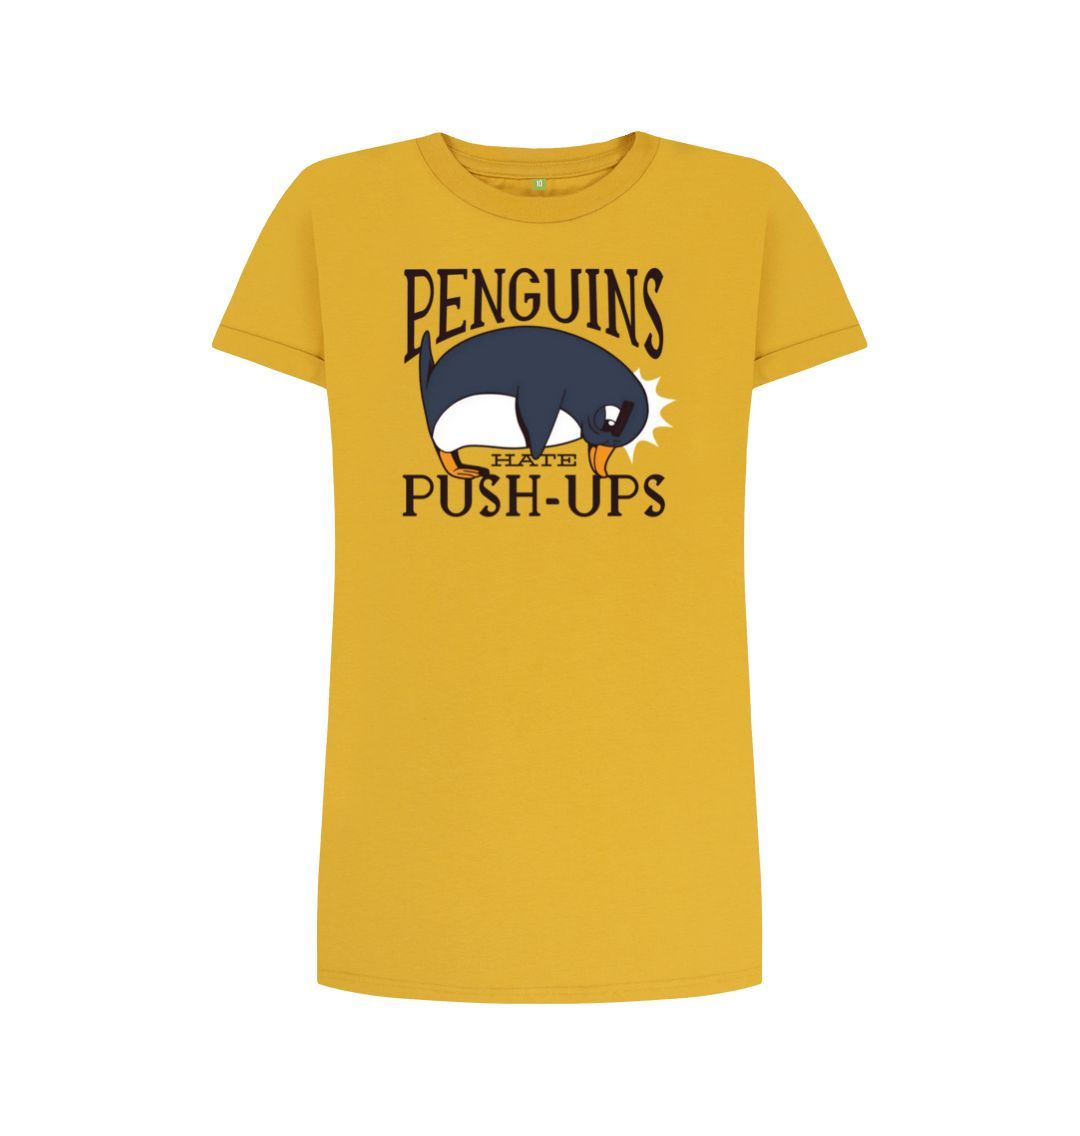 Mustard Penguins Hate Push-Ups Women's T-Shirt Dress